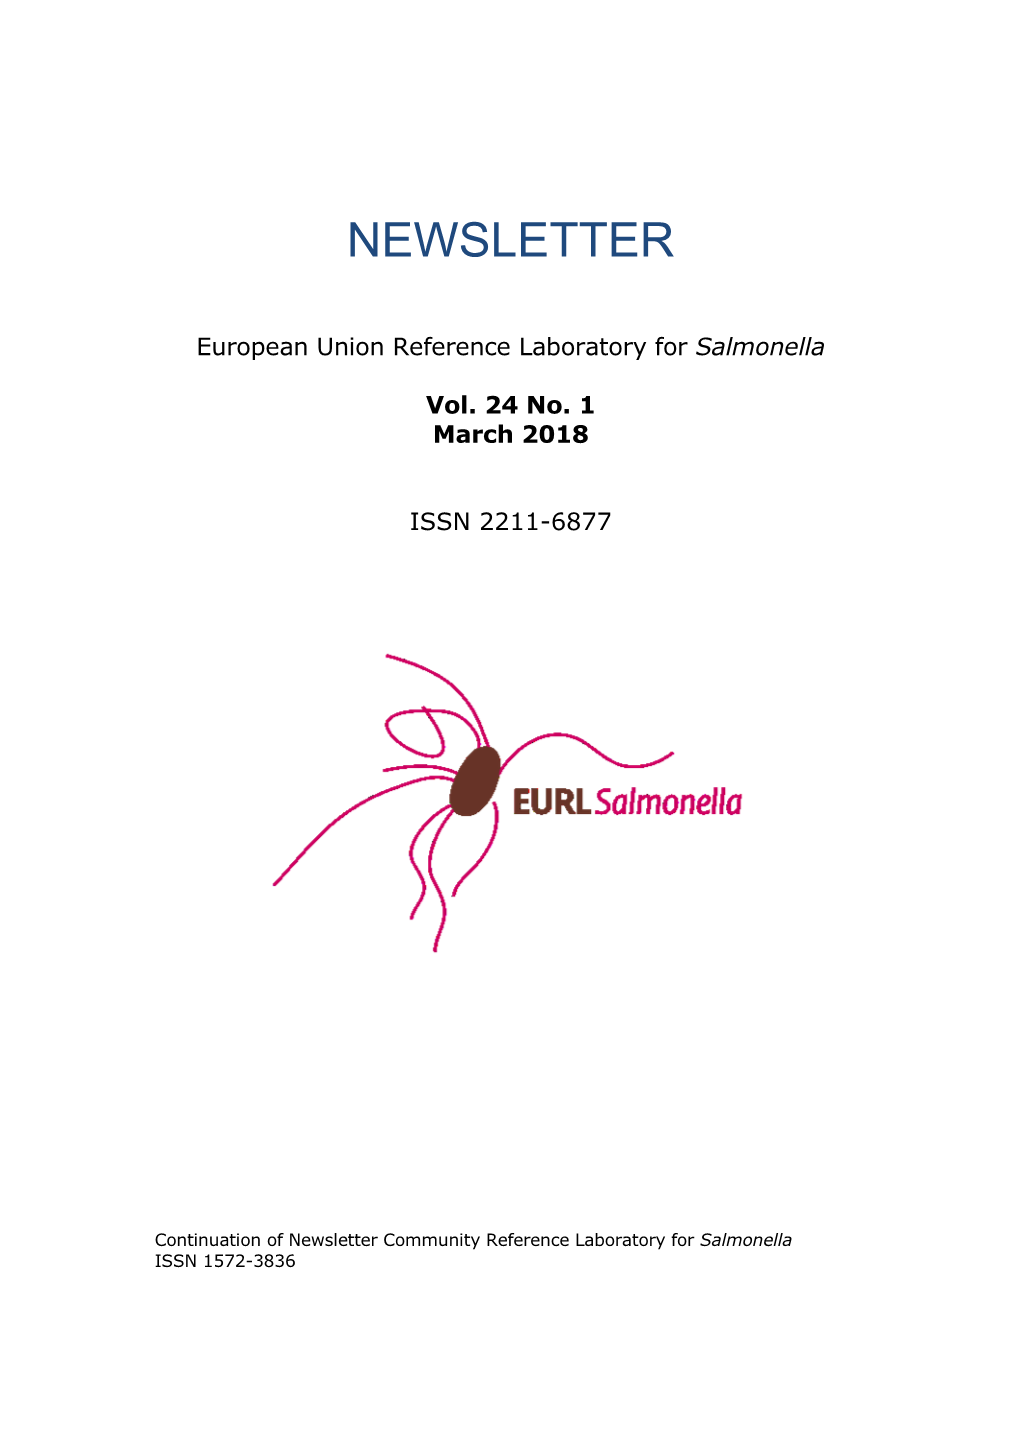 EURL-Salmonella Newsletter March 2018